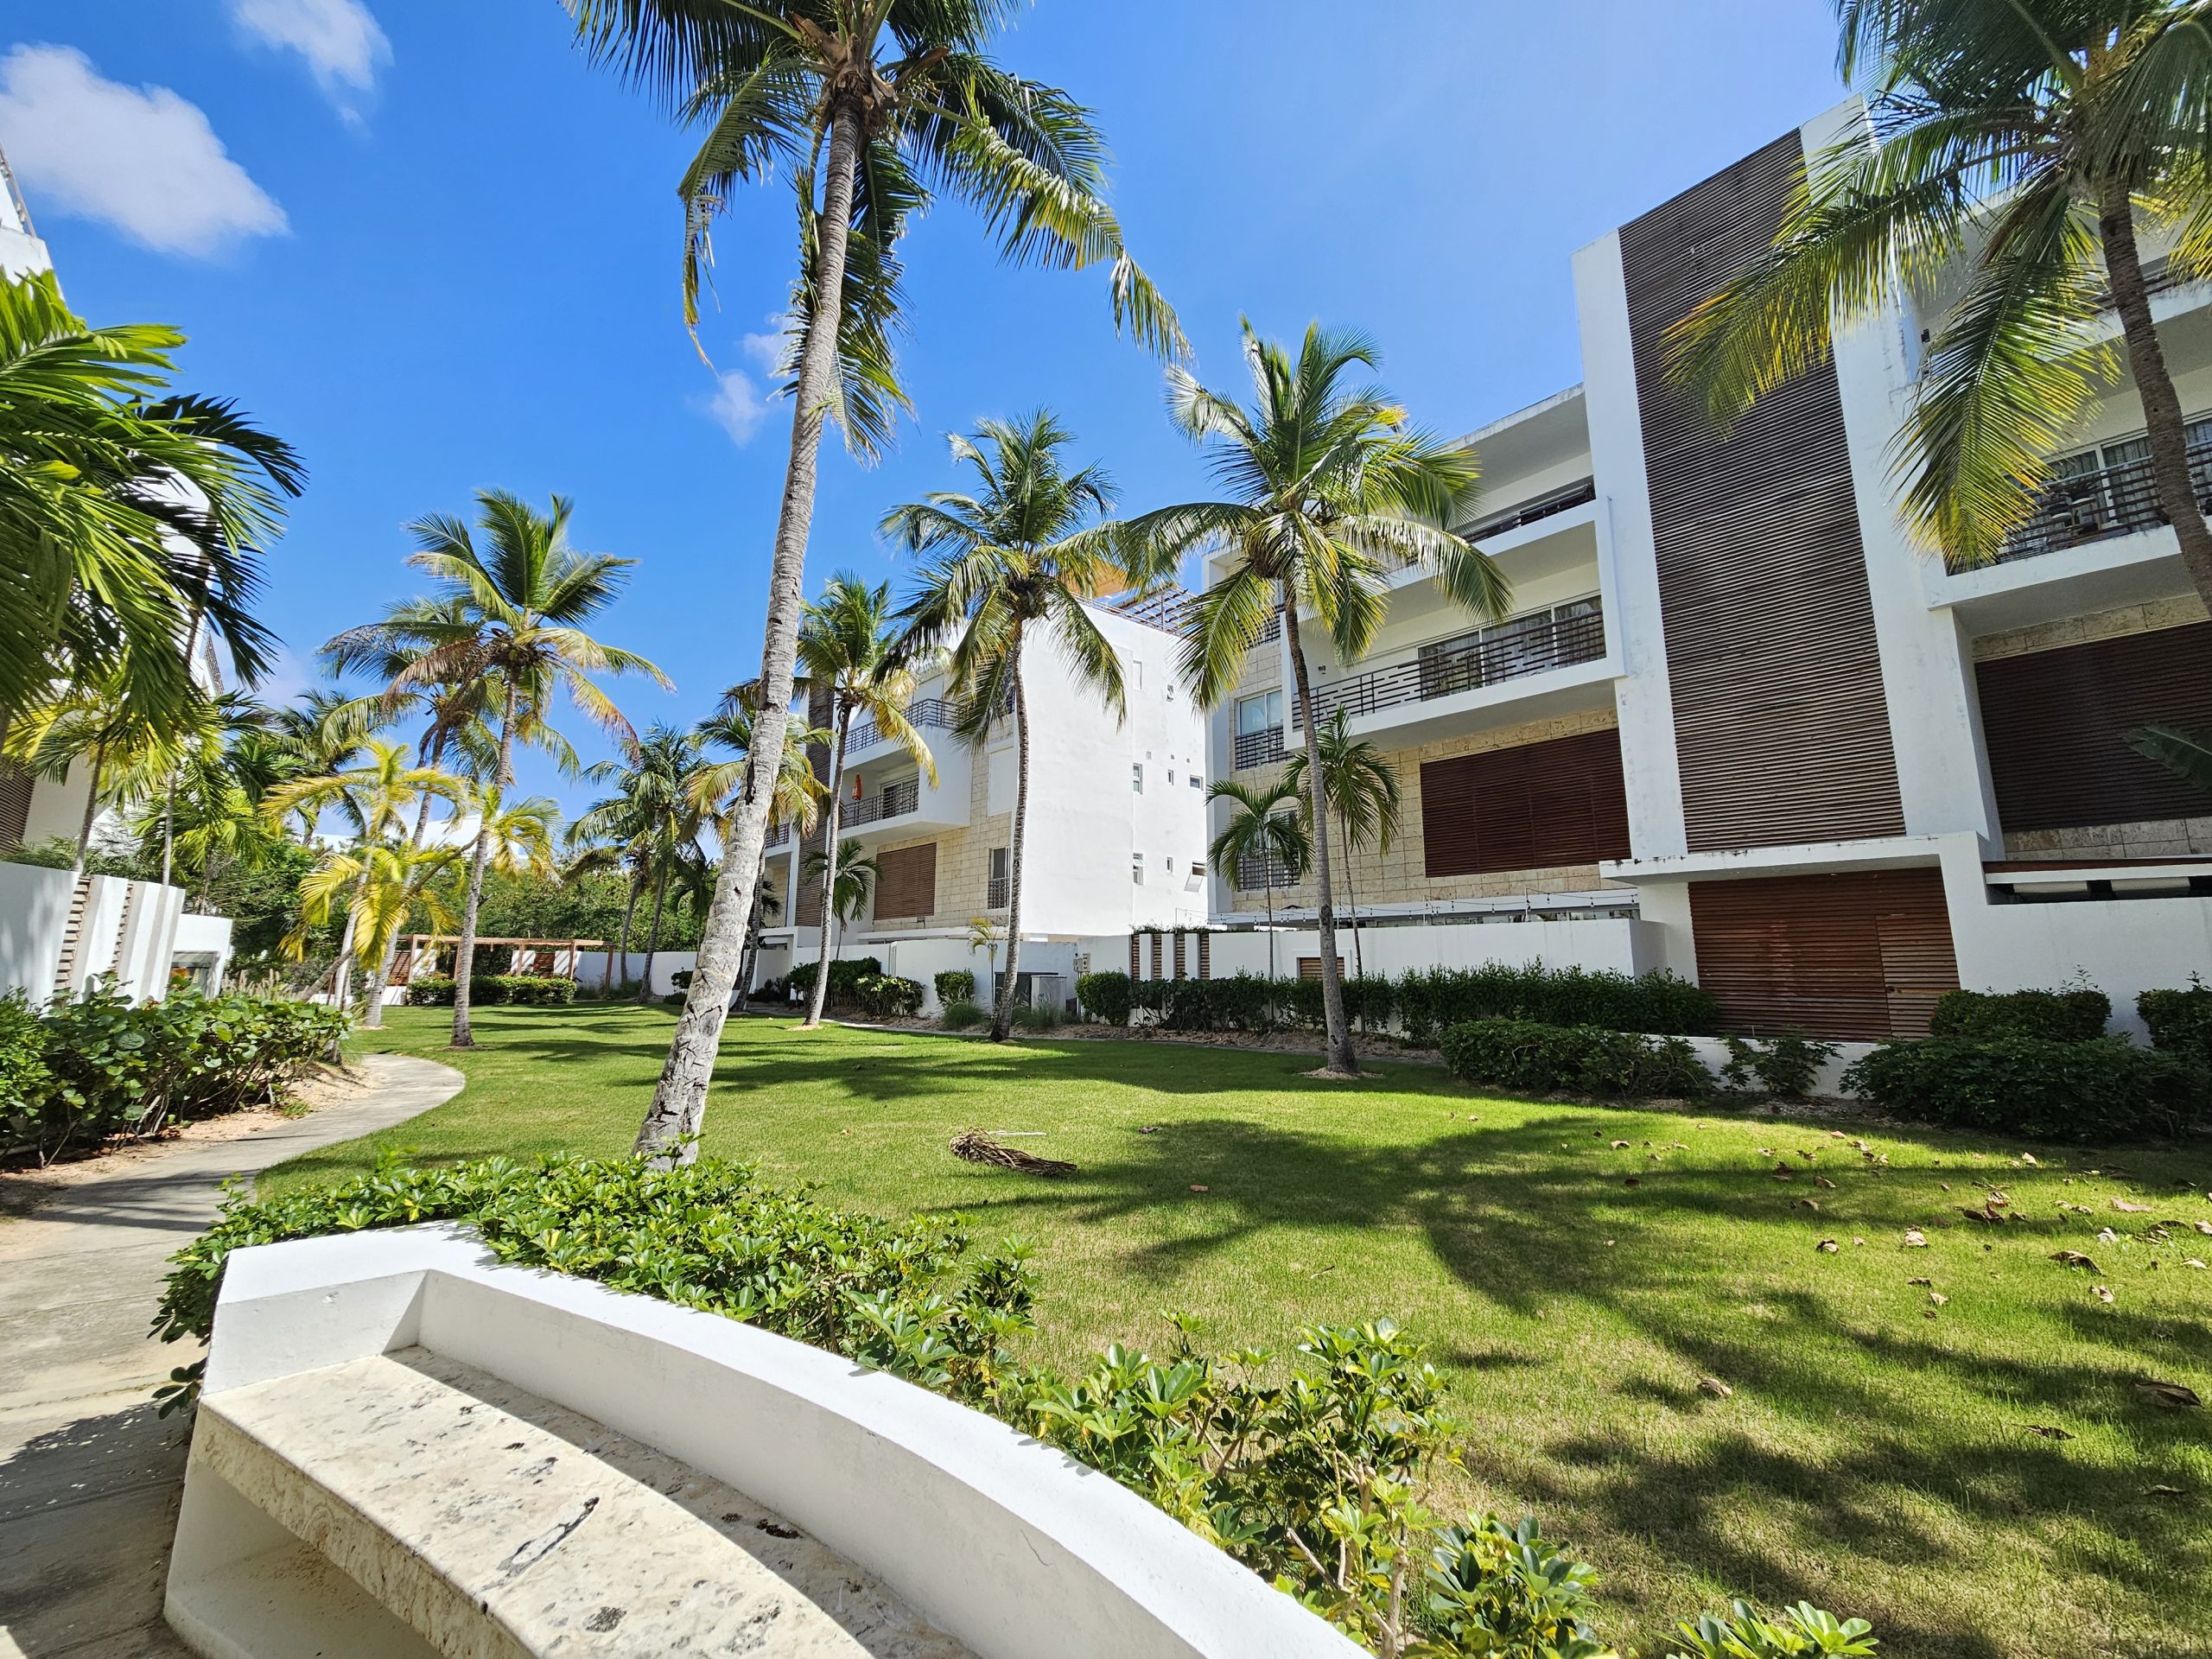 Apartamento tipo Pent-house amueblado cerca de la playa en Cap Cana, Ciudad Las Canas, República Dominicana.